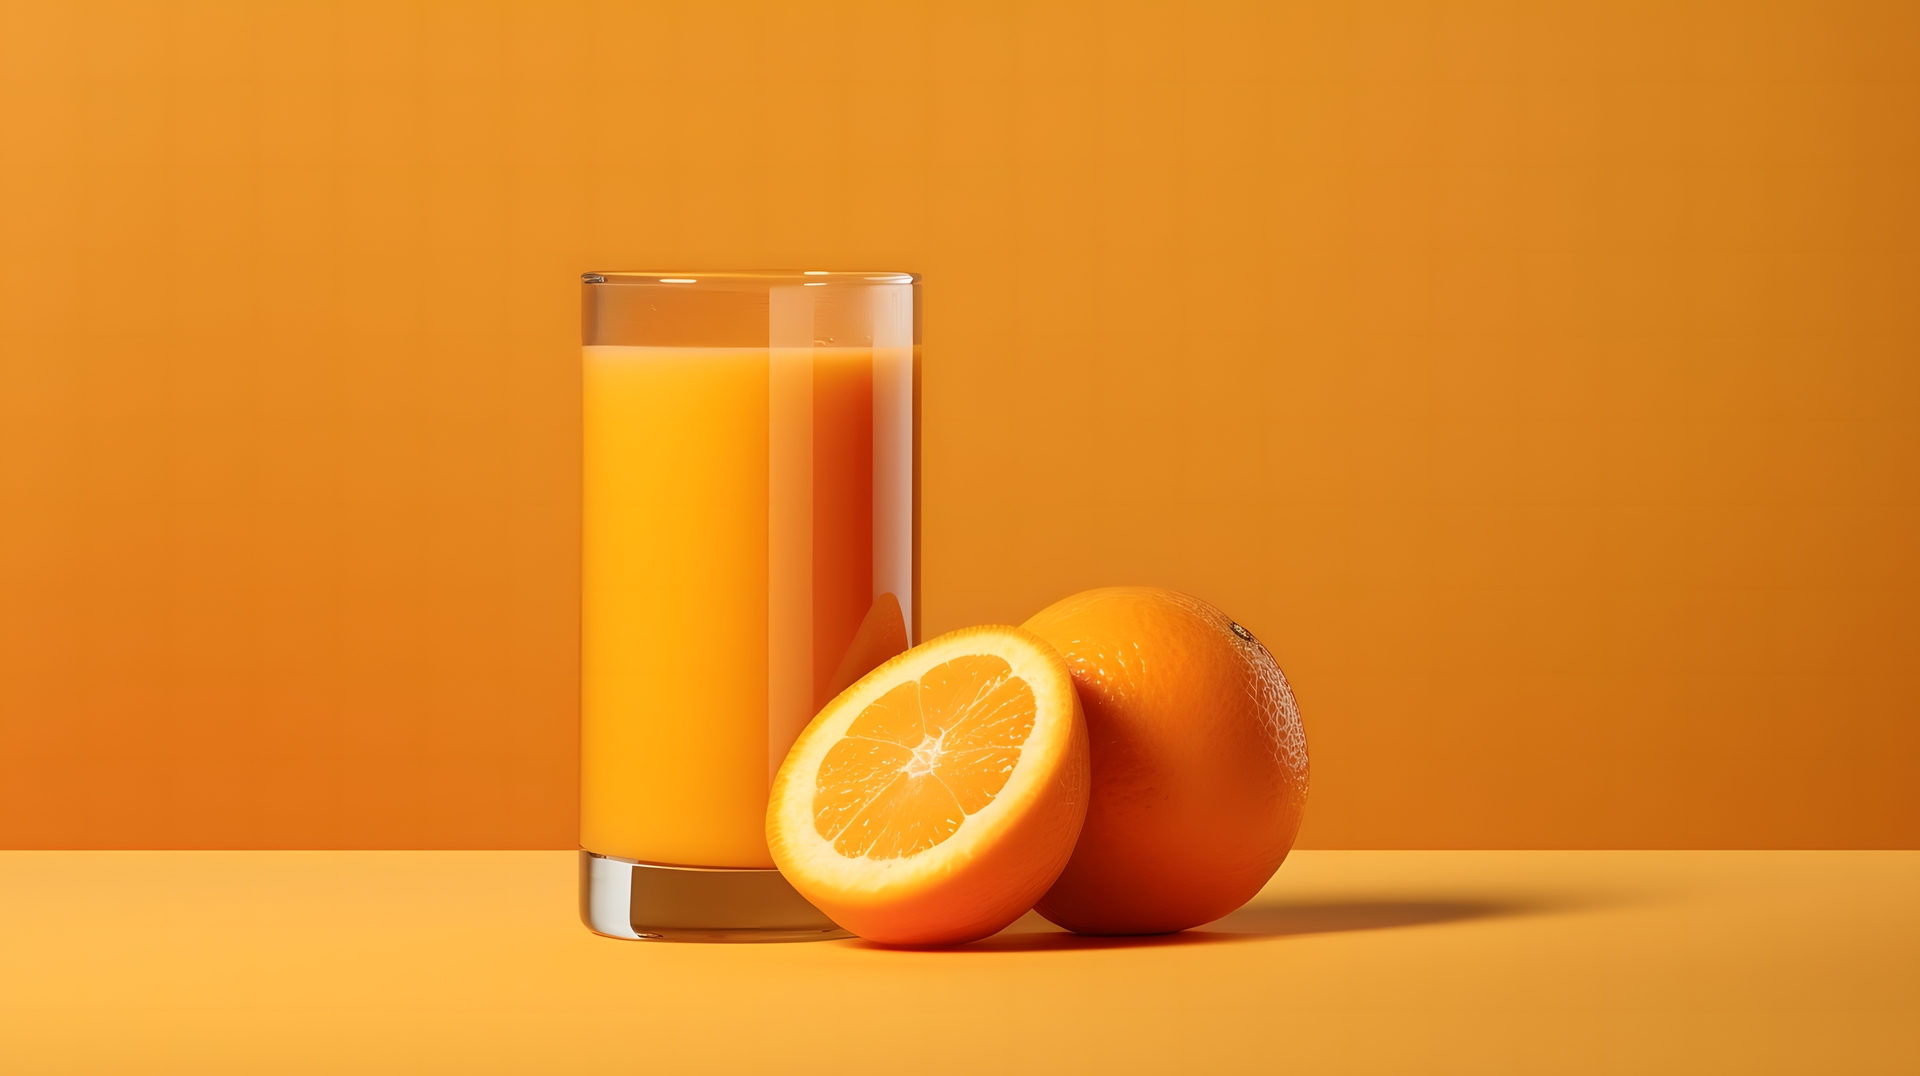 Na obrazku widać świeżo wyciśnięty sok pomarańczowy, który jest bogaty w witaminę C. Jego intensywny pomarańczowy kolor i soczysty smak wskazują na obfitość tej ważnej witaminy. Sok pomarańczowy jest nie tylko orzeźwiający, ale także wspiera zdrowy układ odpornościowy i pomaga w utrzymaniu dobrej kondycji organizmu